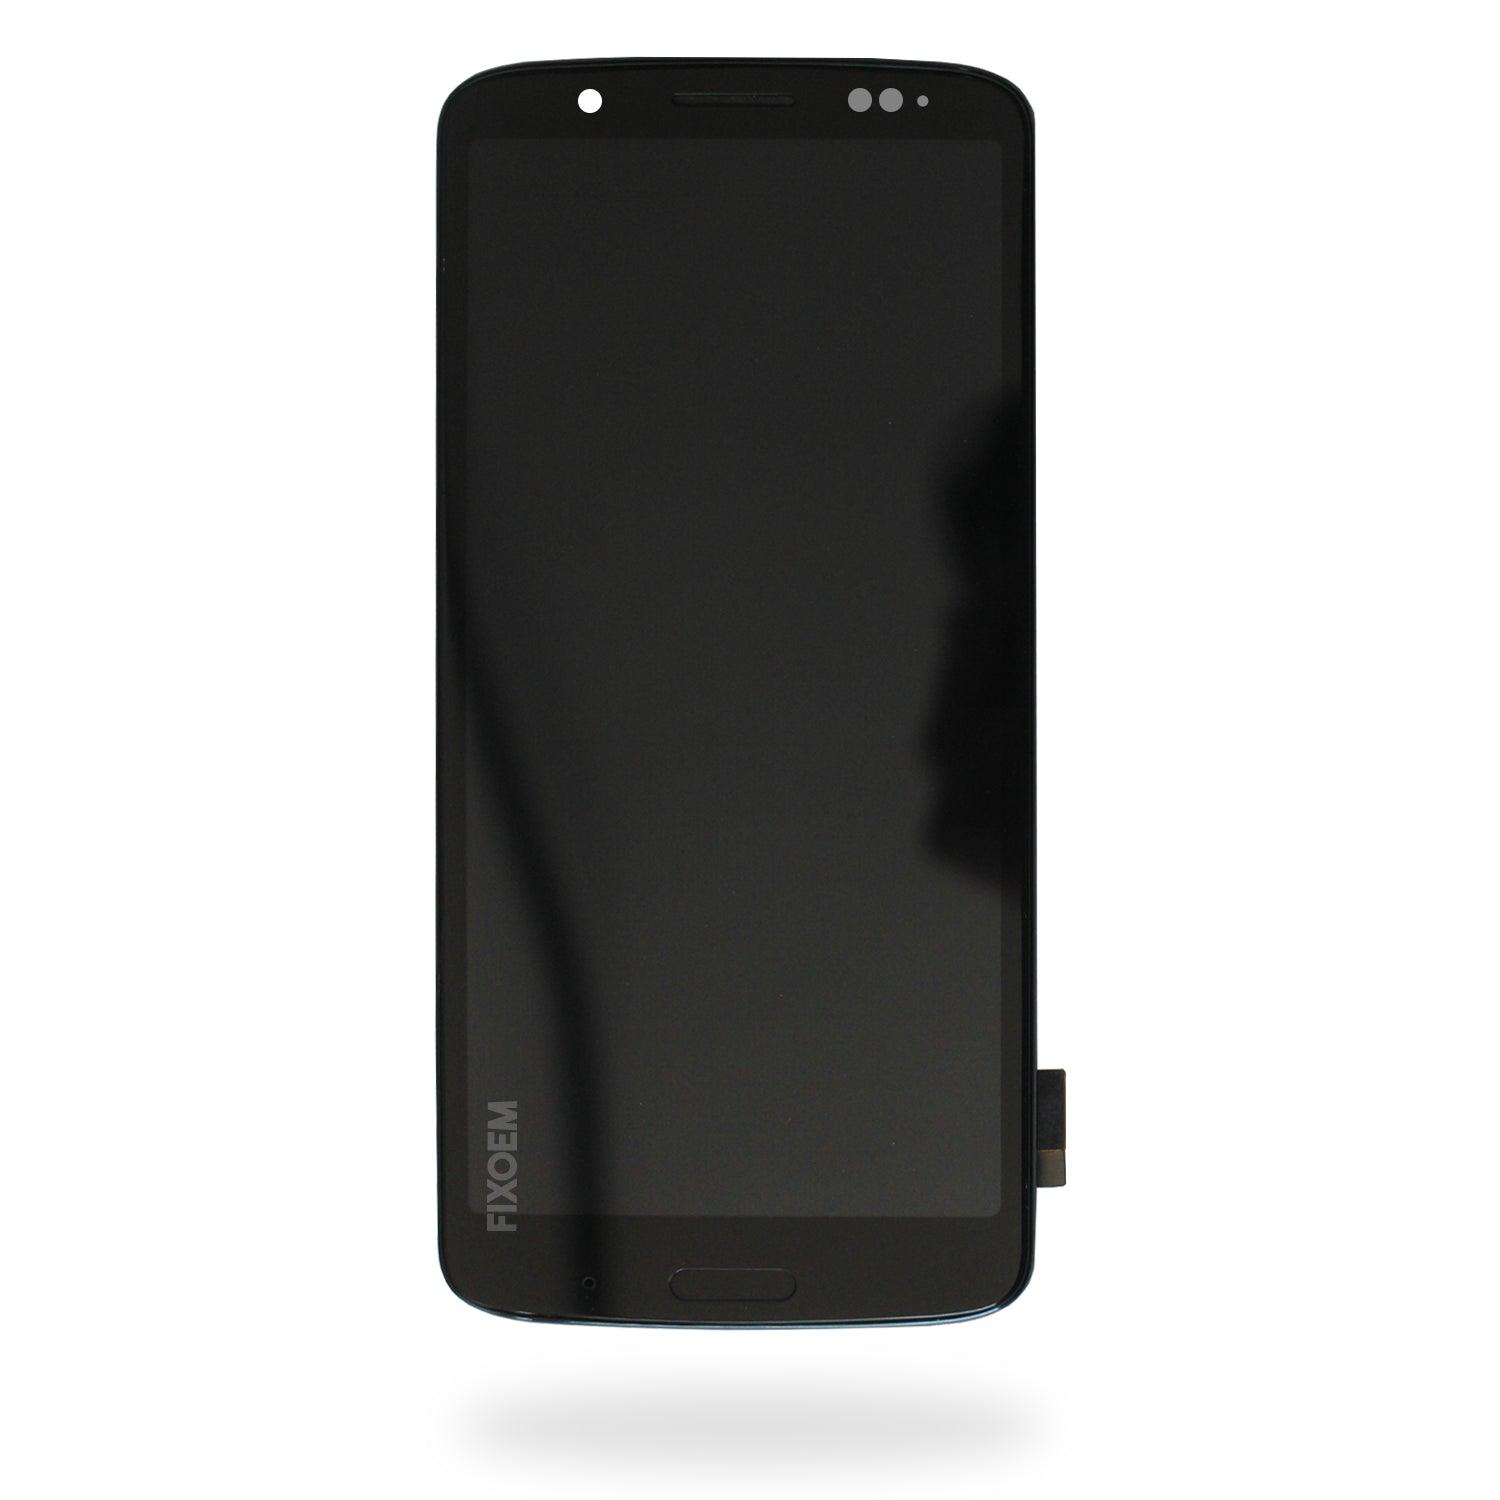 Display Moto G6 Plus Xt1926 IPS a solo $ 350.00 Refaccion y puestos celulares, refurbish y microelectronica.- FixOEM